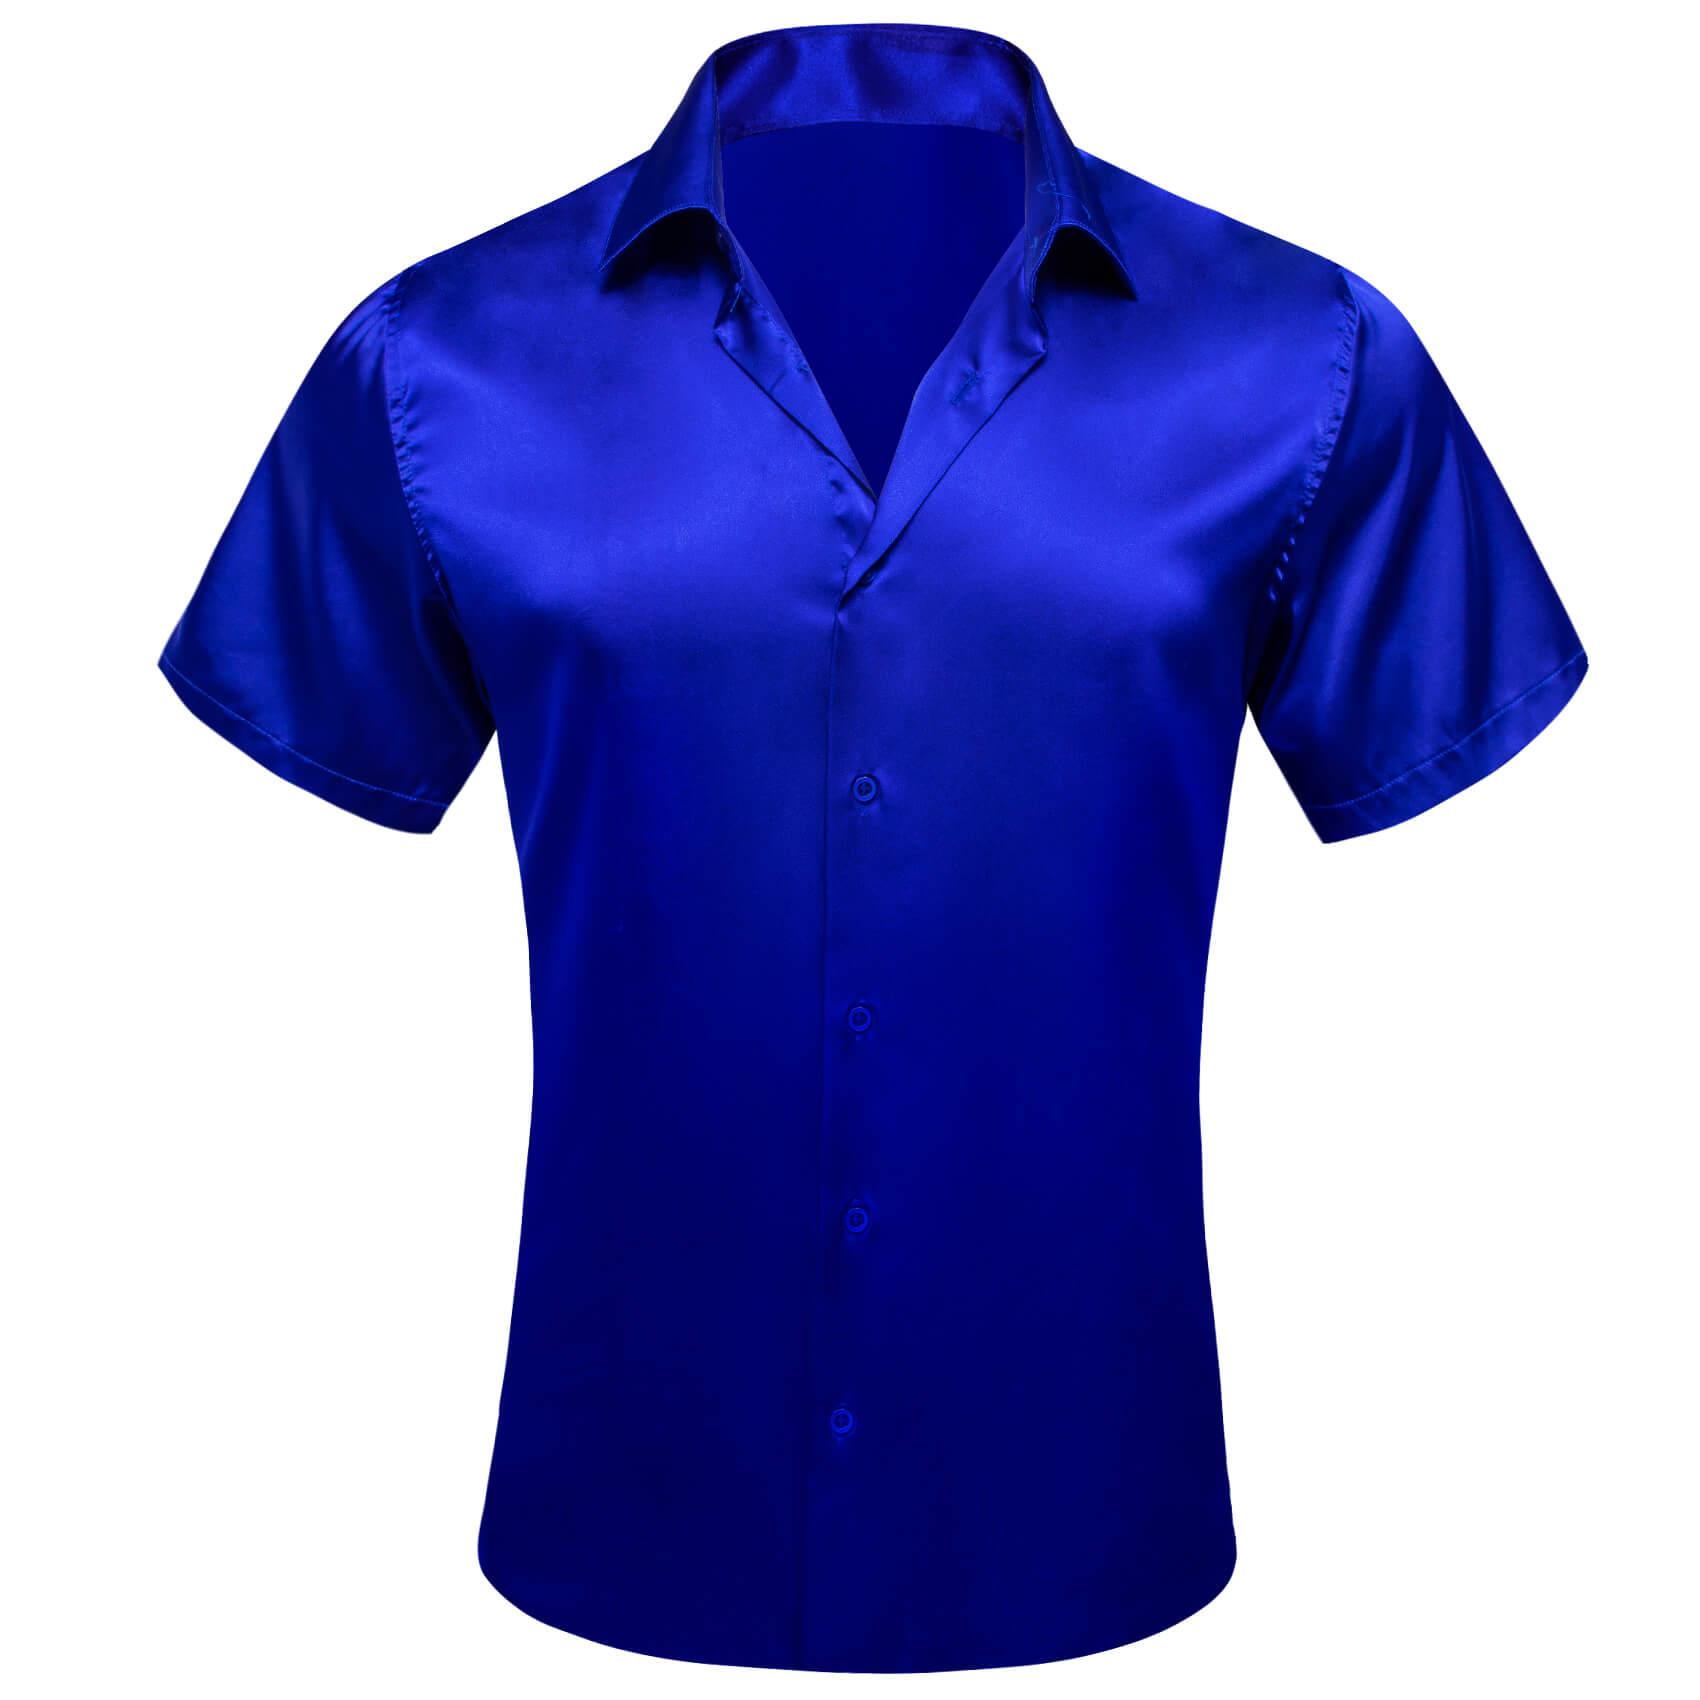 Barry Wang navy blue dress shirt